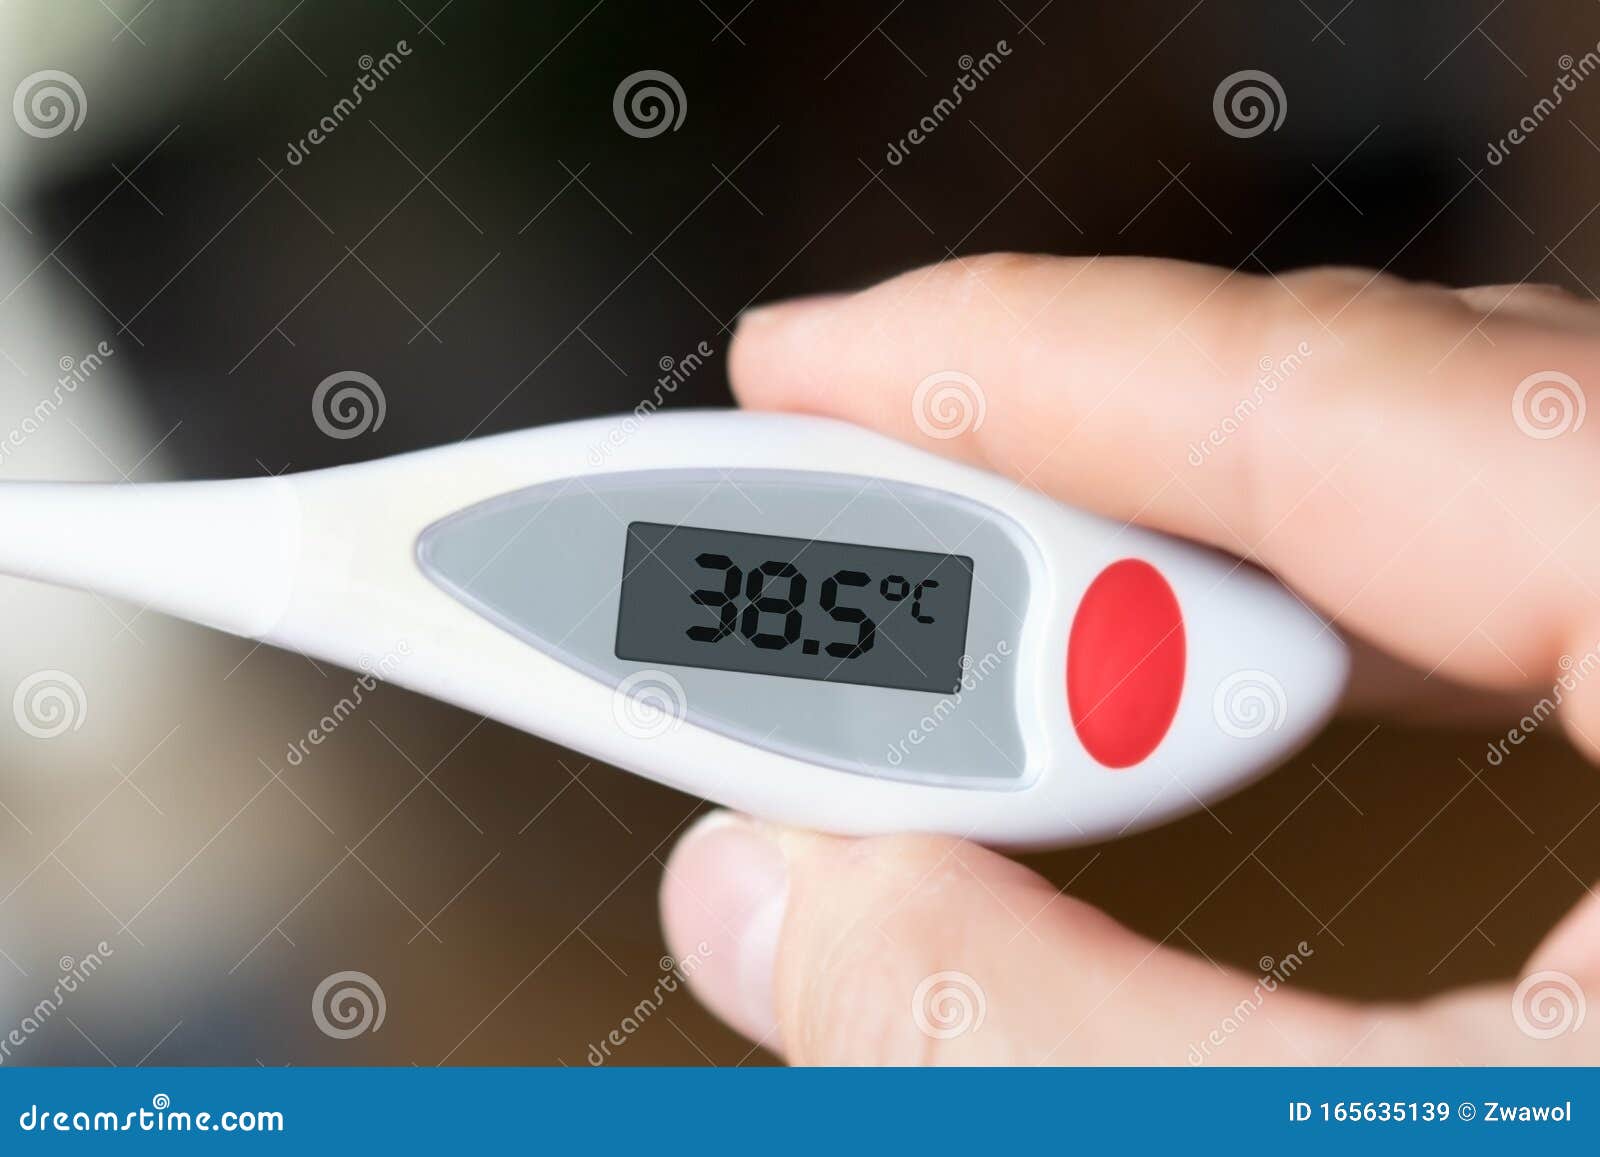 Termometro a febbre 38,5 immagine stock. Immagine di febbre - 165635139